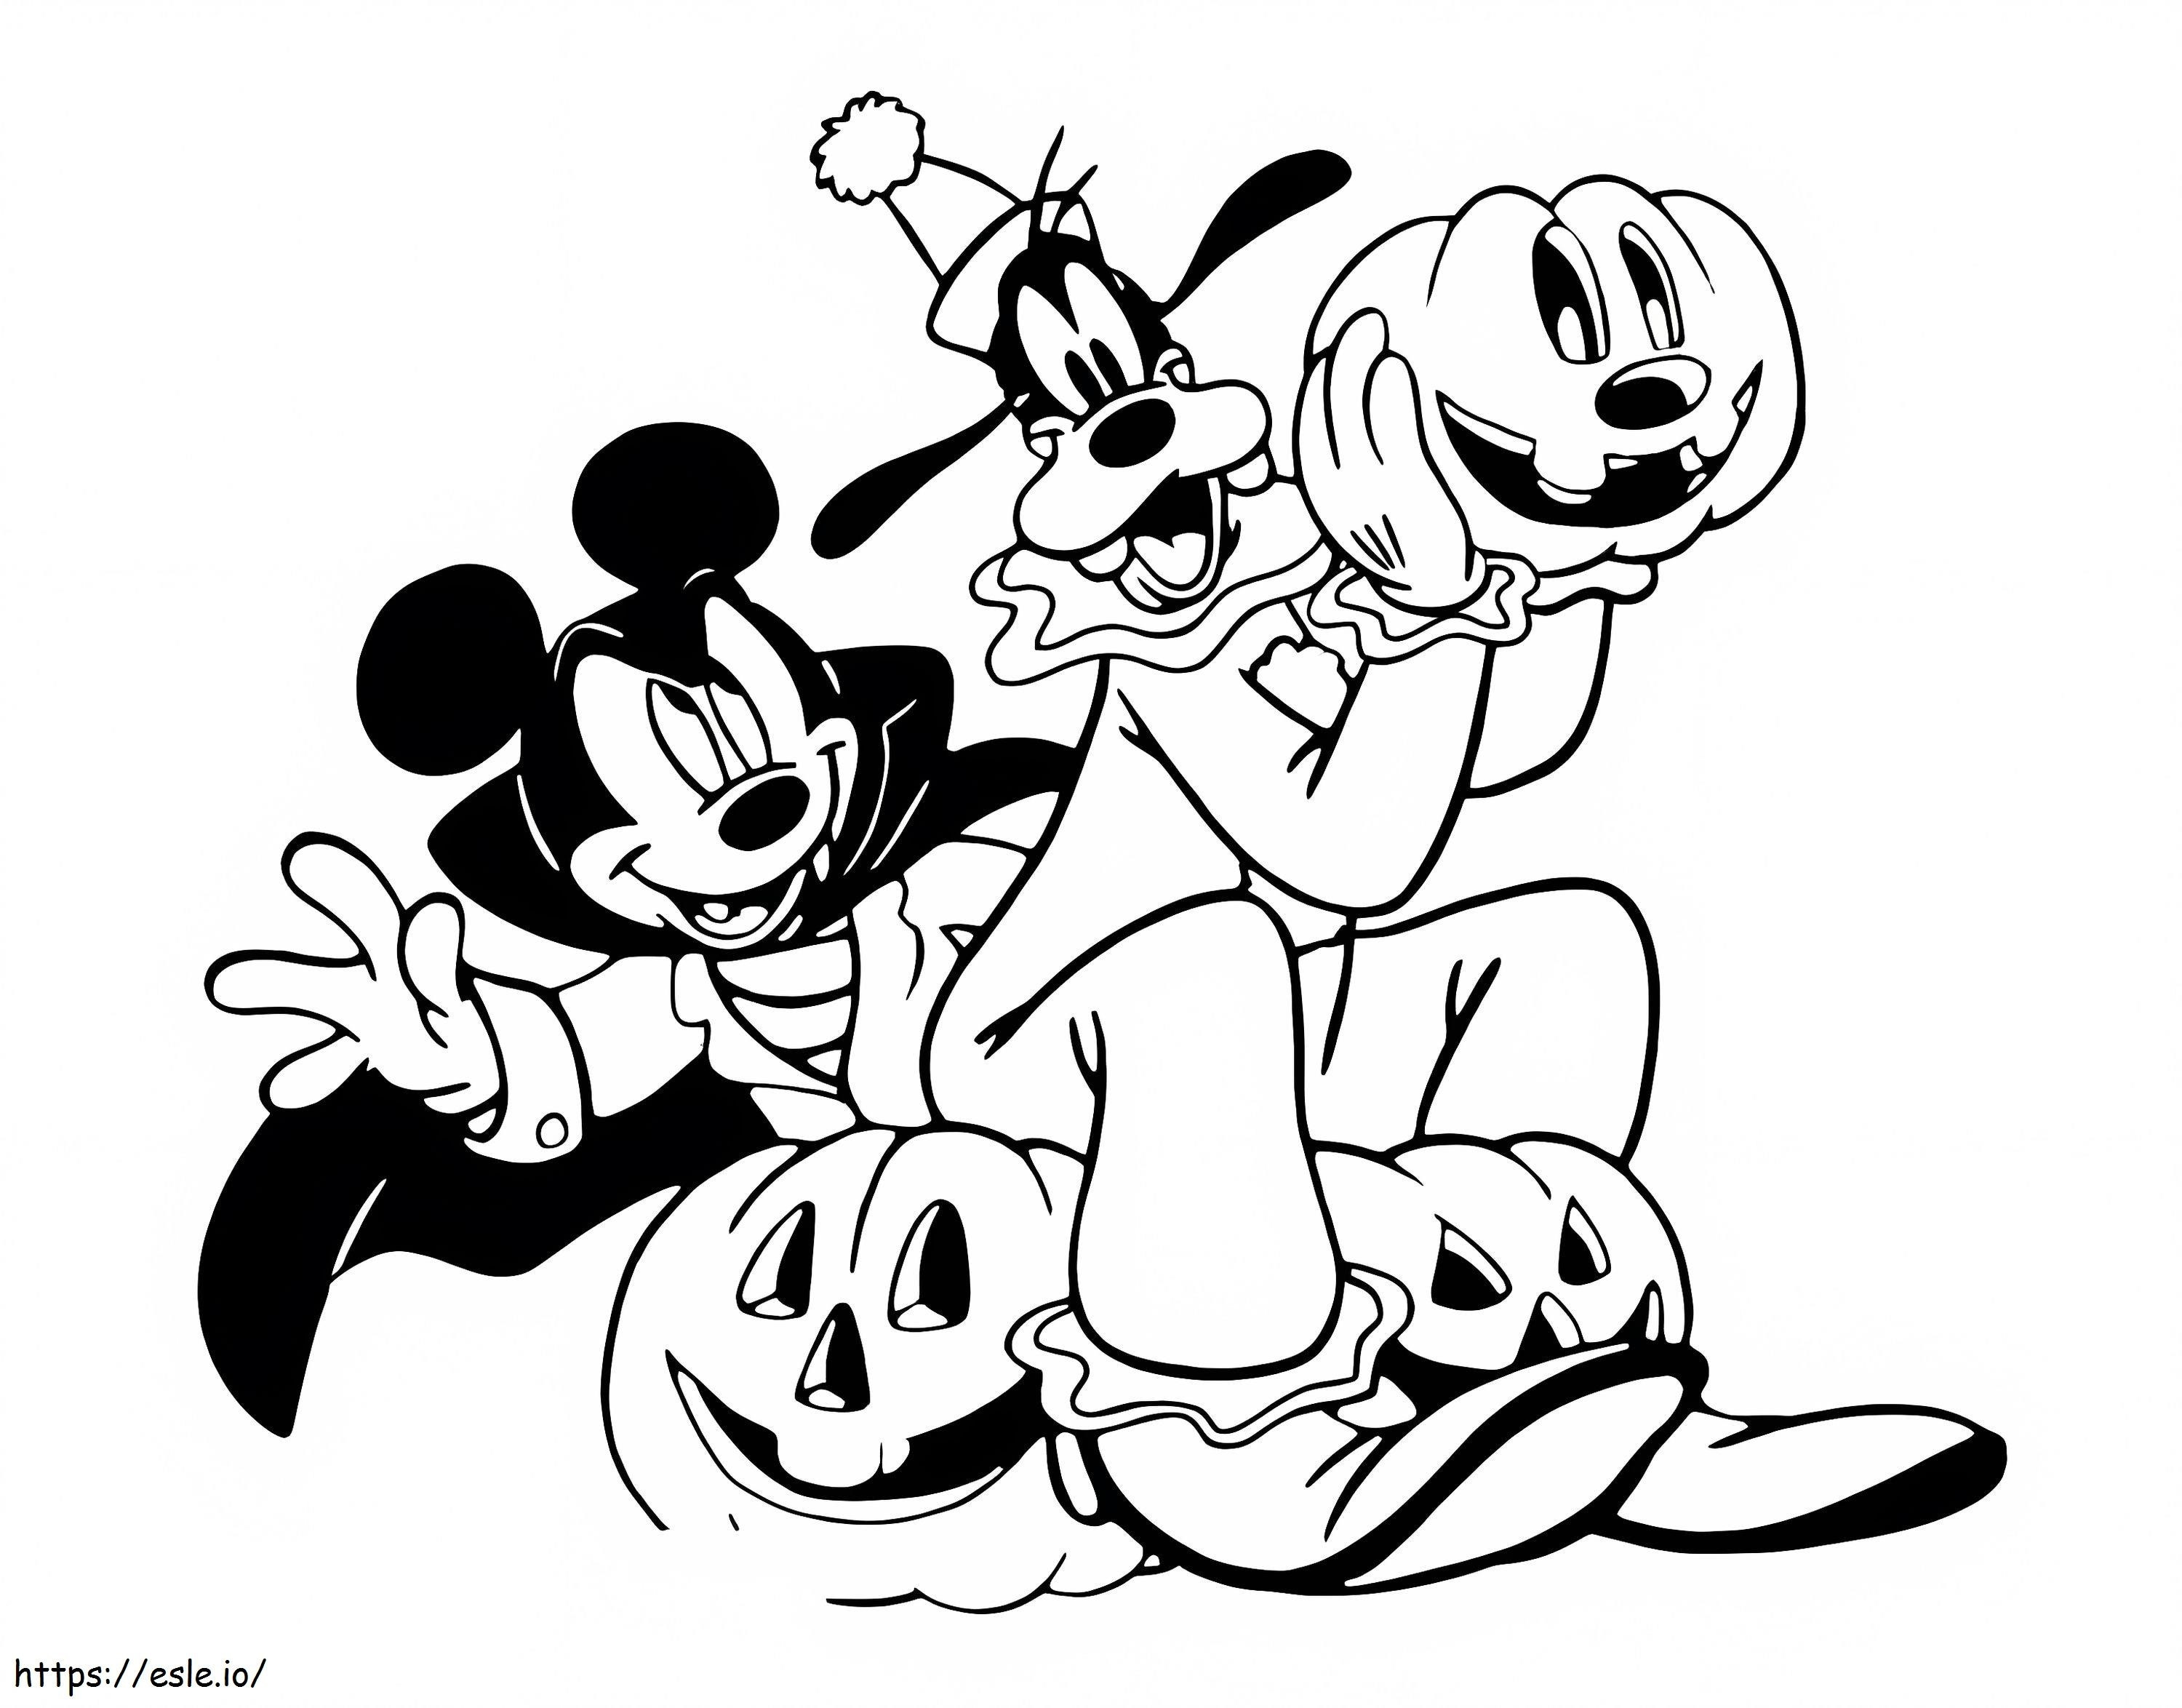 Mickey y Goofy en Halloween para colorear